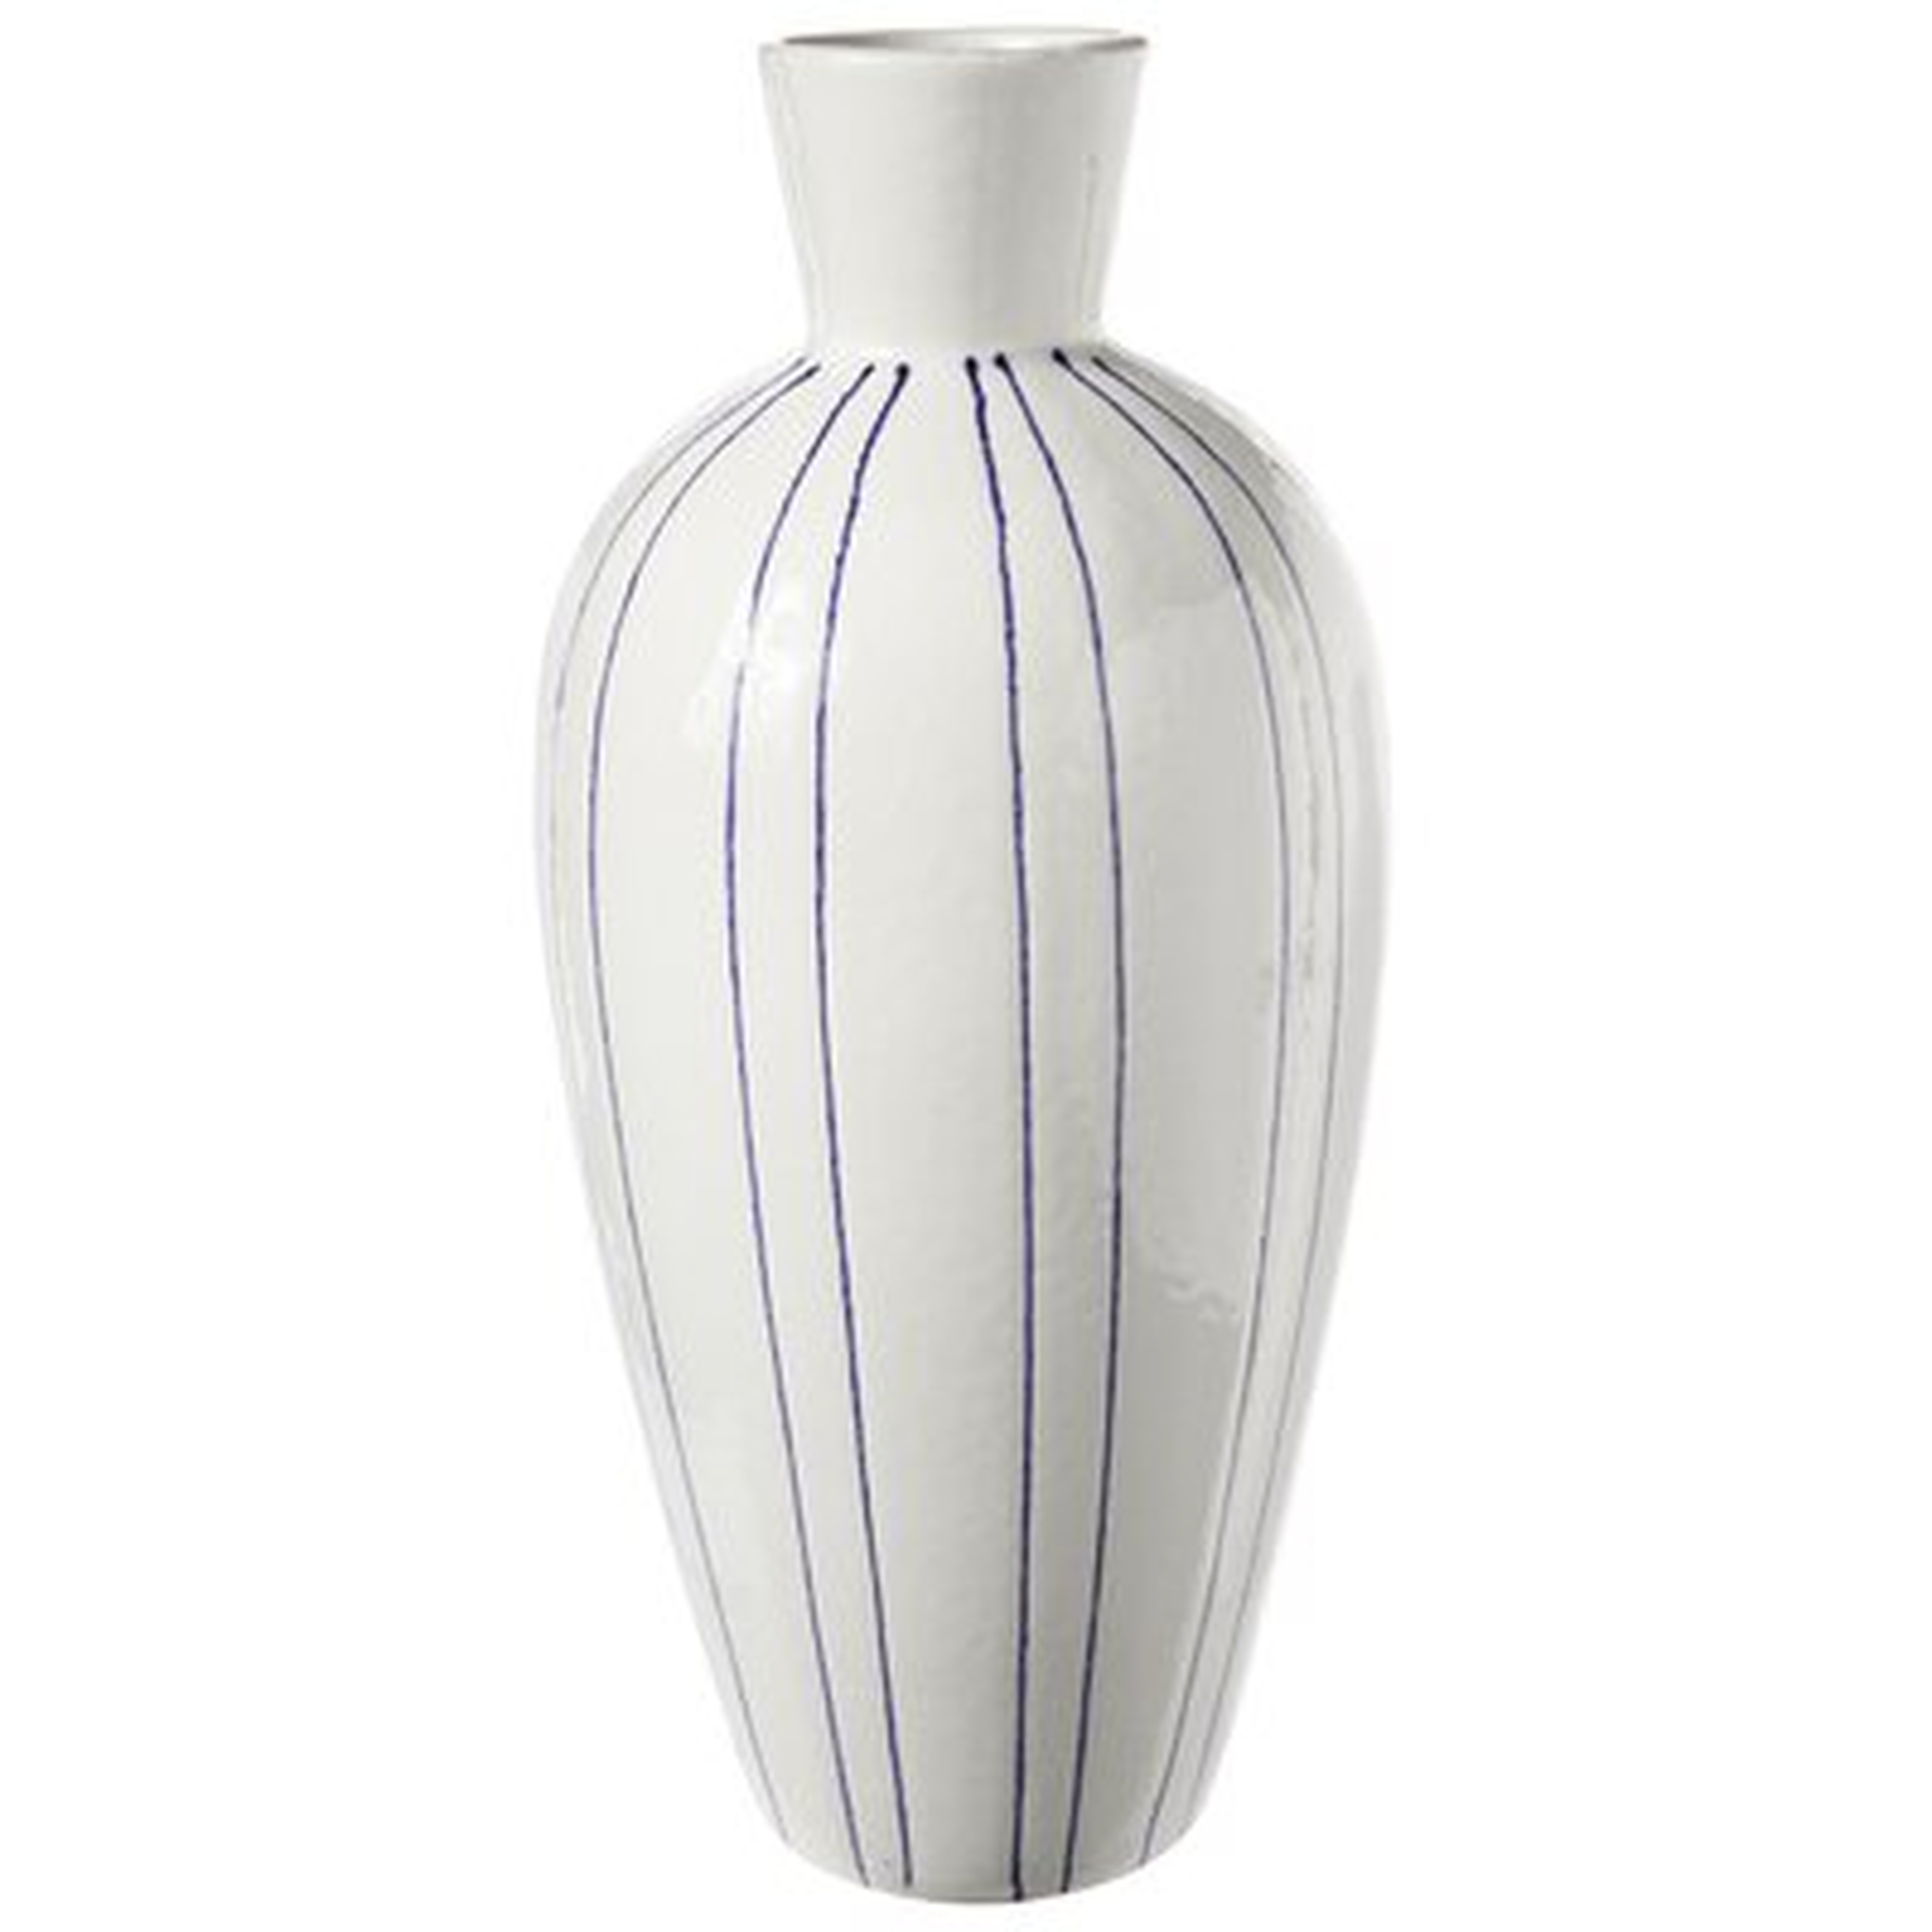 Goetz White Ceramic Table Vase - Wayfair